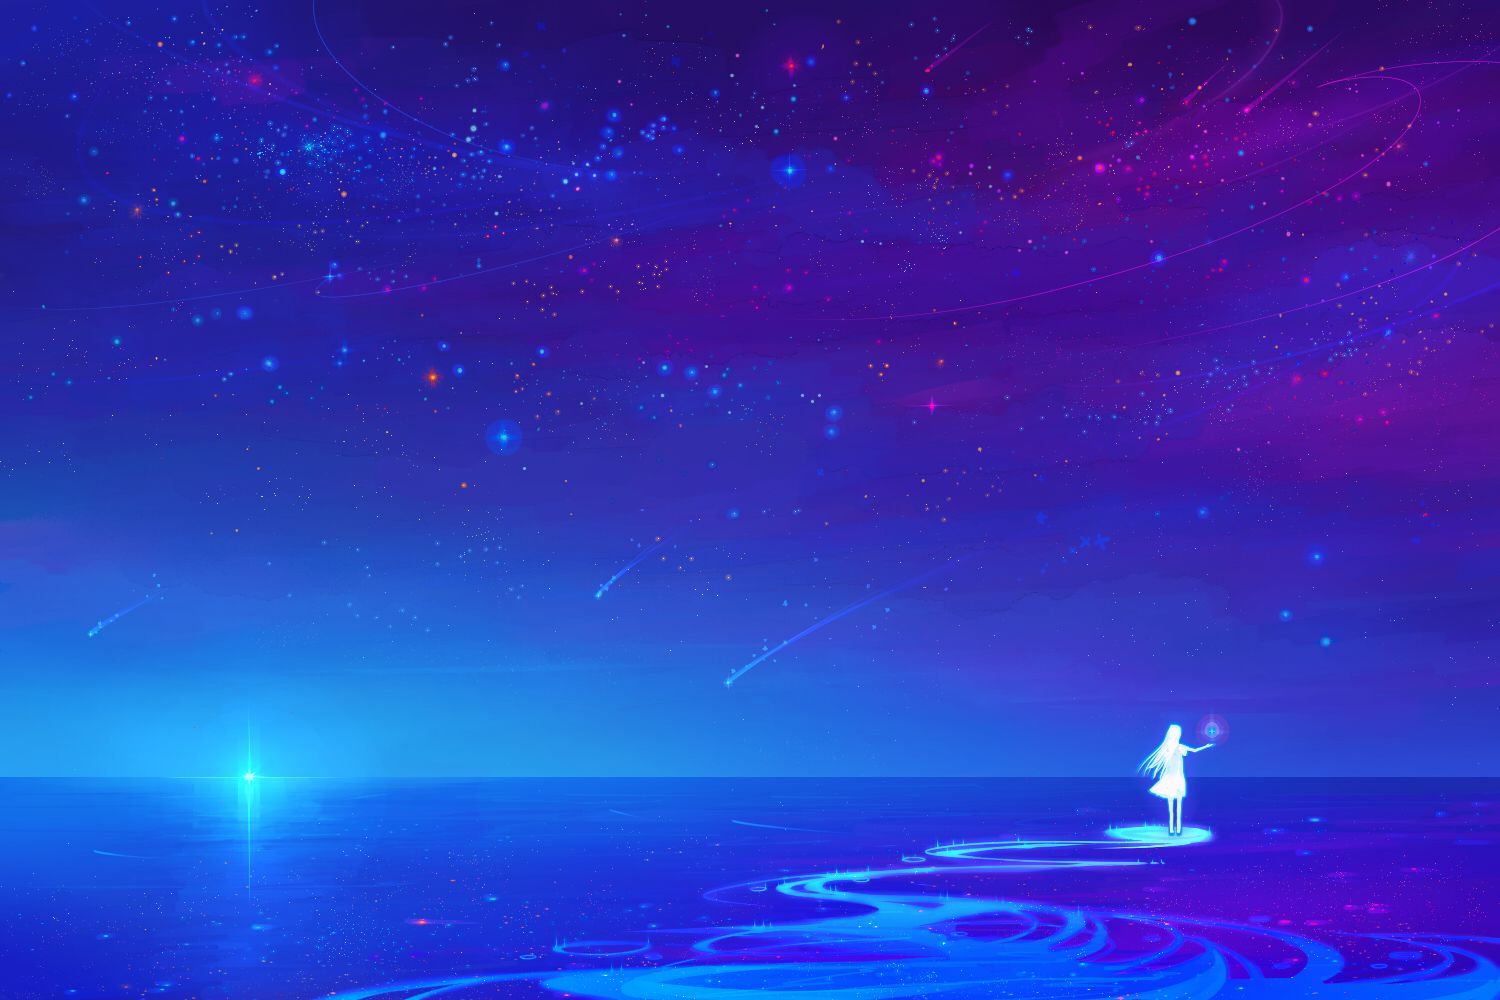 Anime Night Sky Wallpaperx1000. Night sky wallpaper, Anime scenery, Night sky art